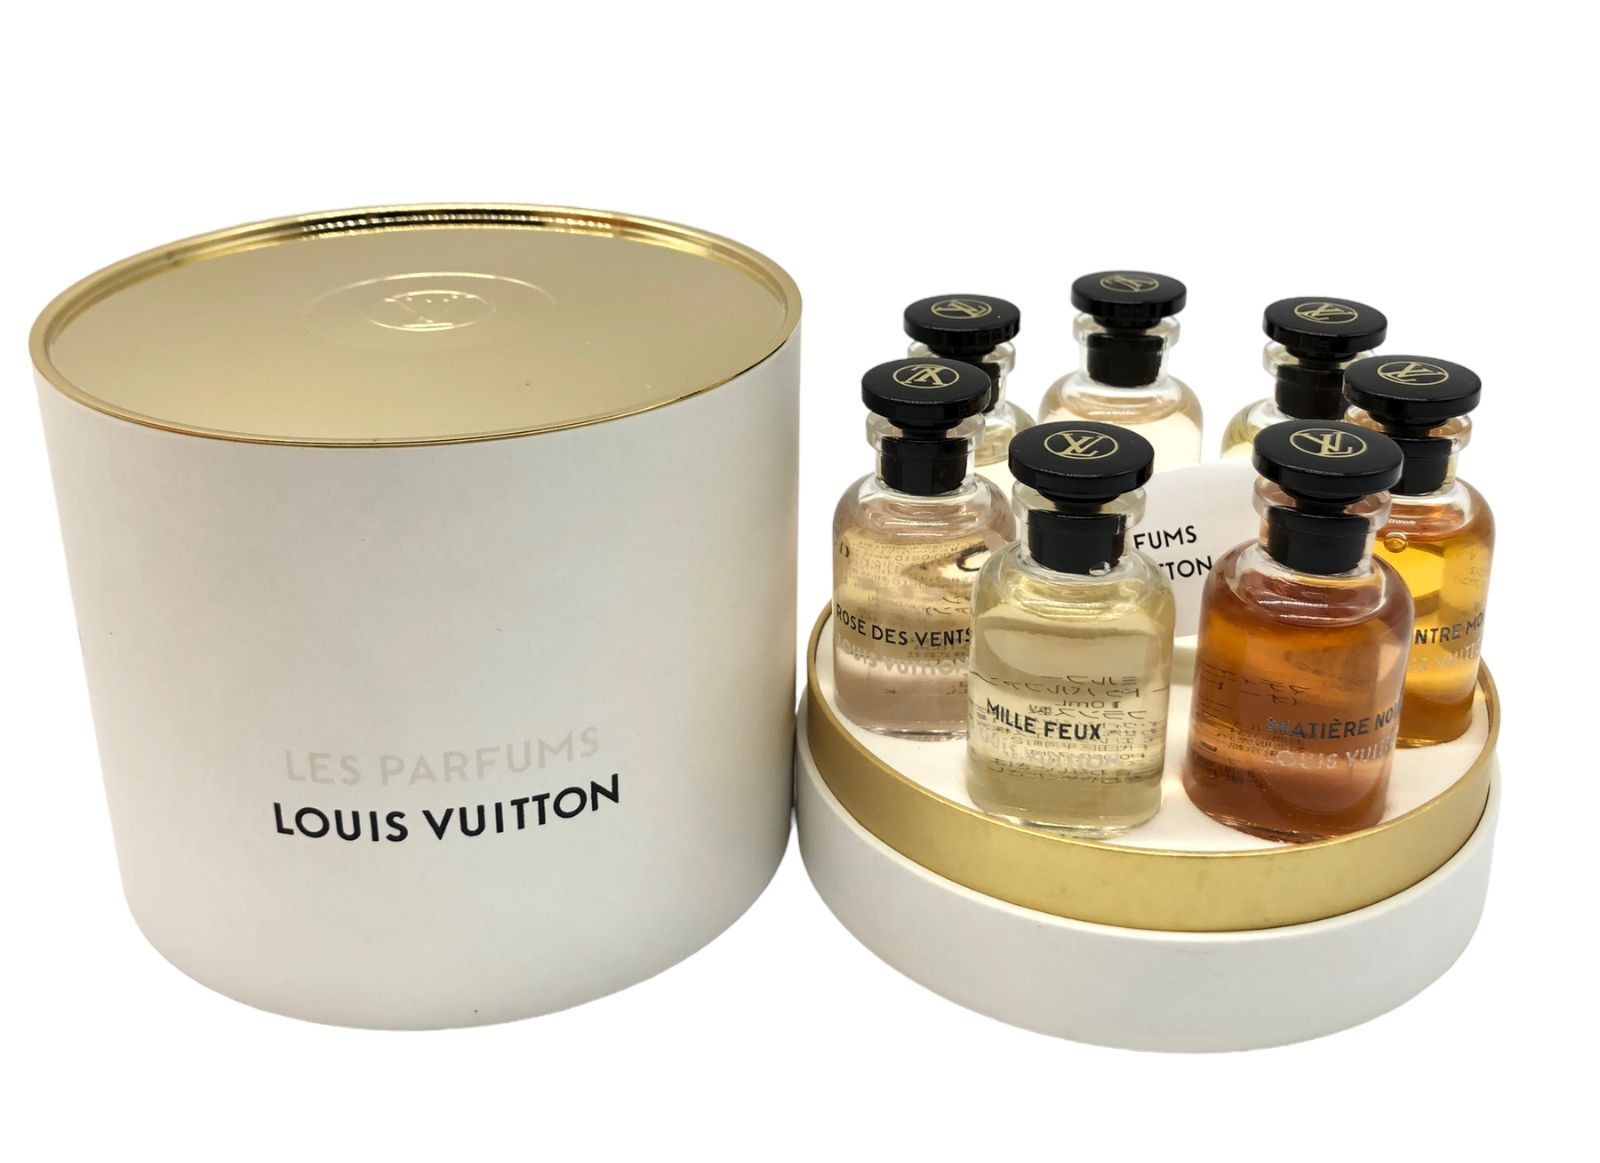 LOUIS VUITTON オードゥ パルファンミニチュア香水セット7本セット